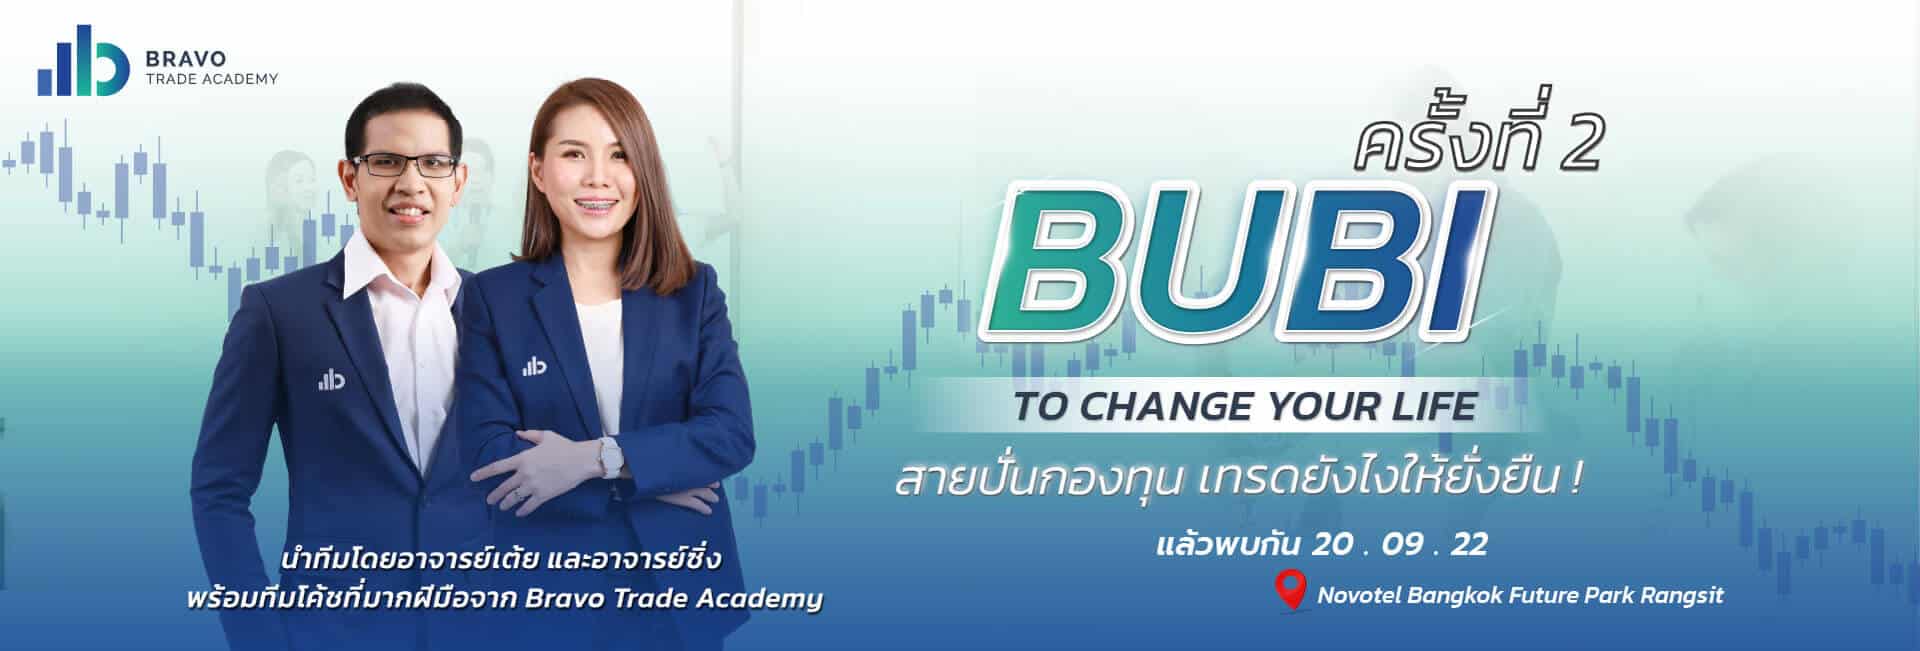 BUBI to change you life 2